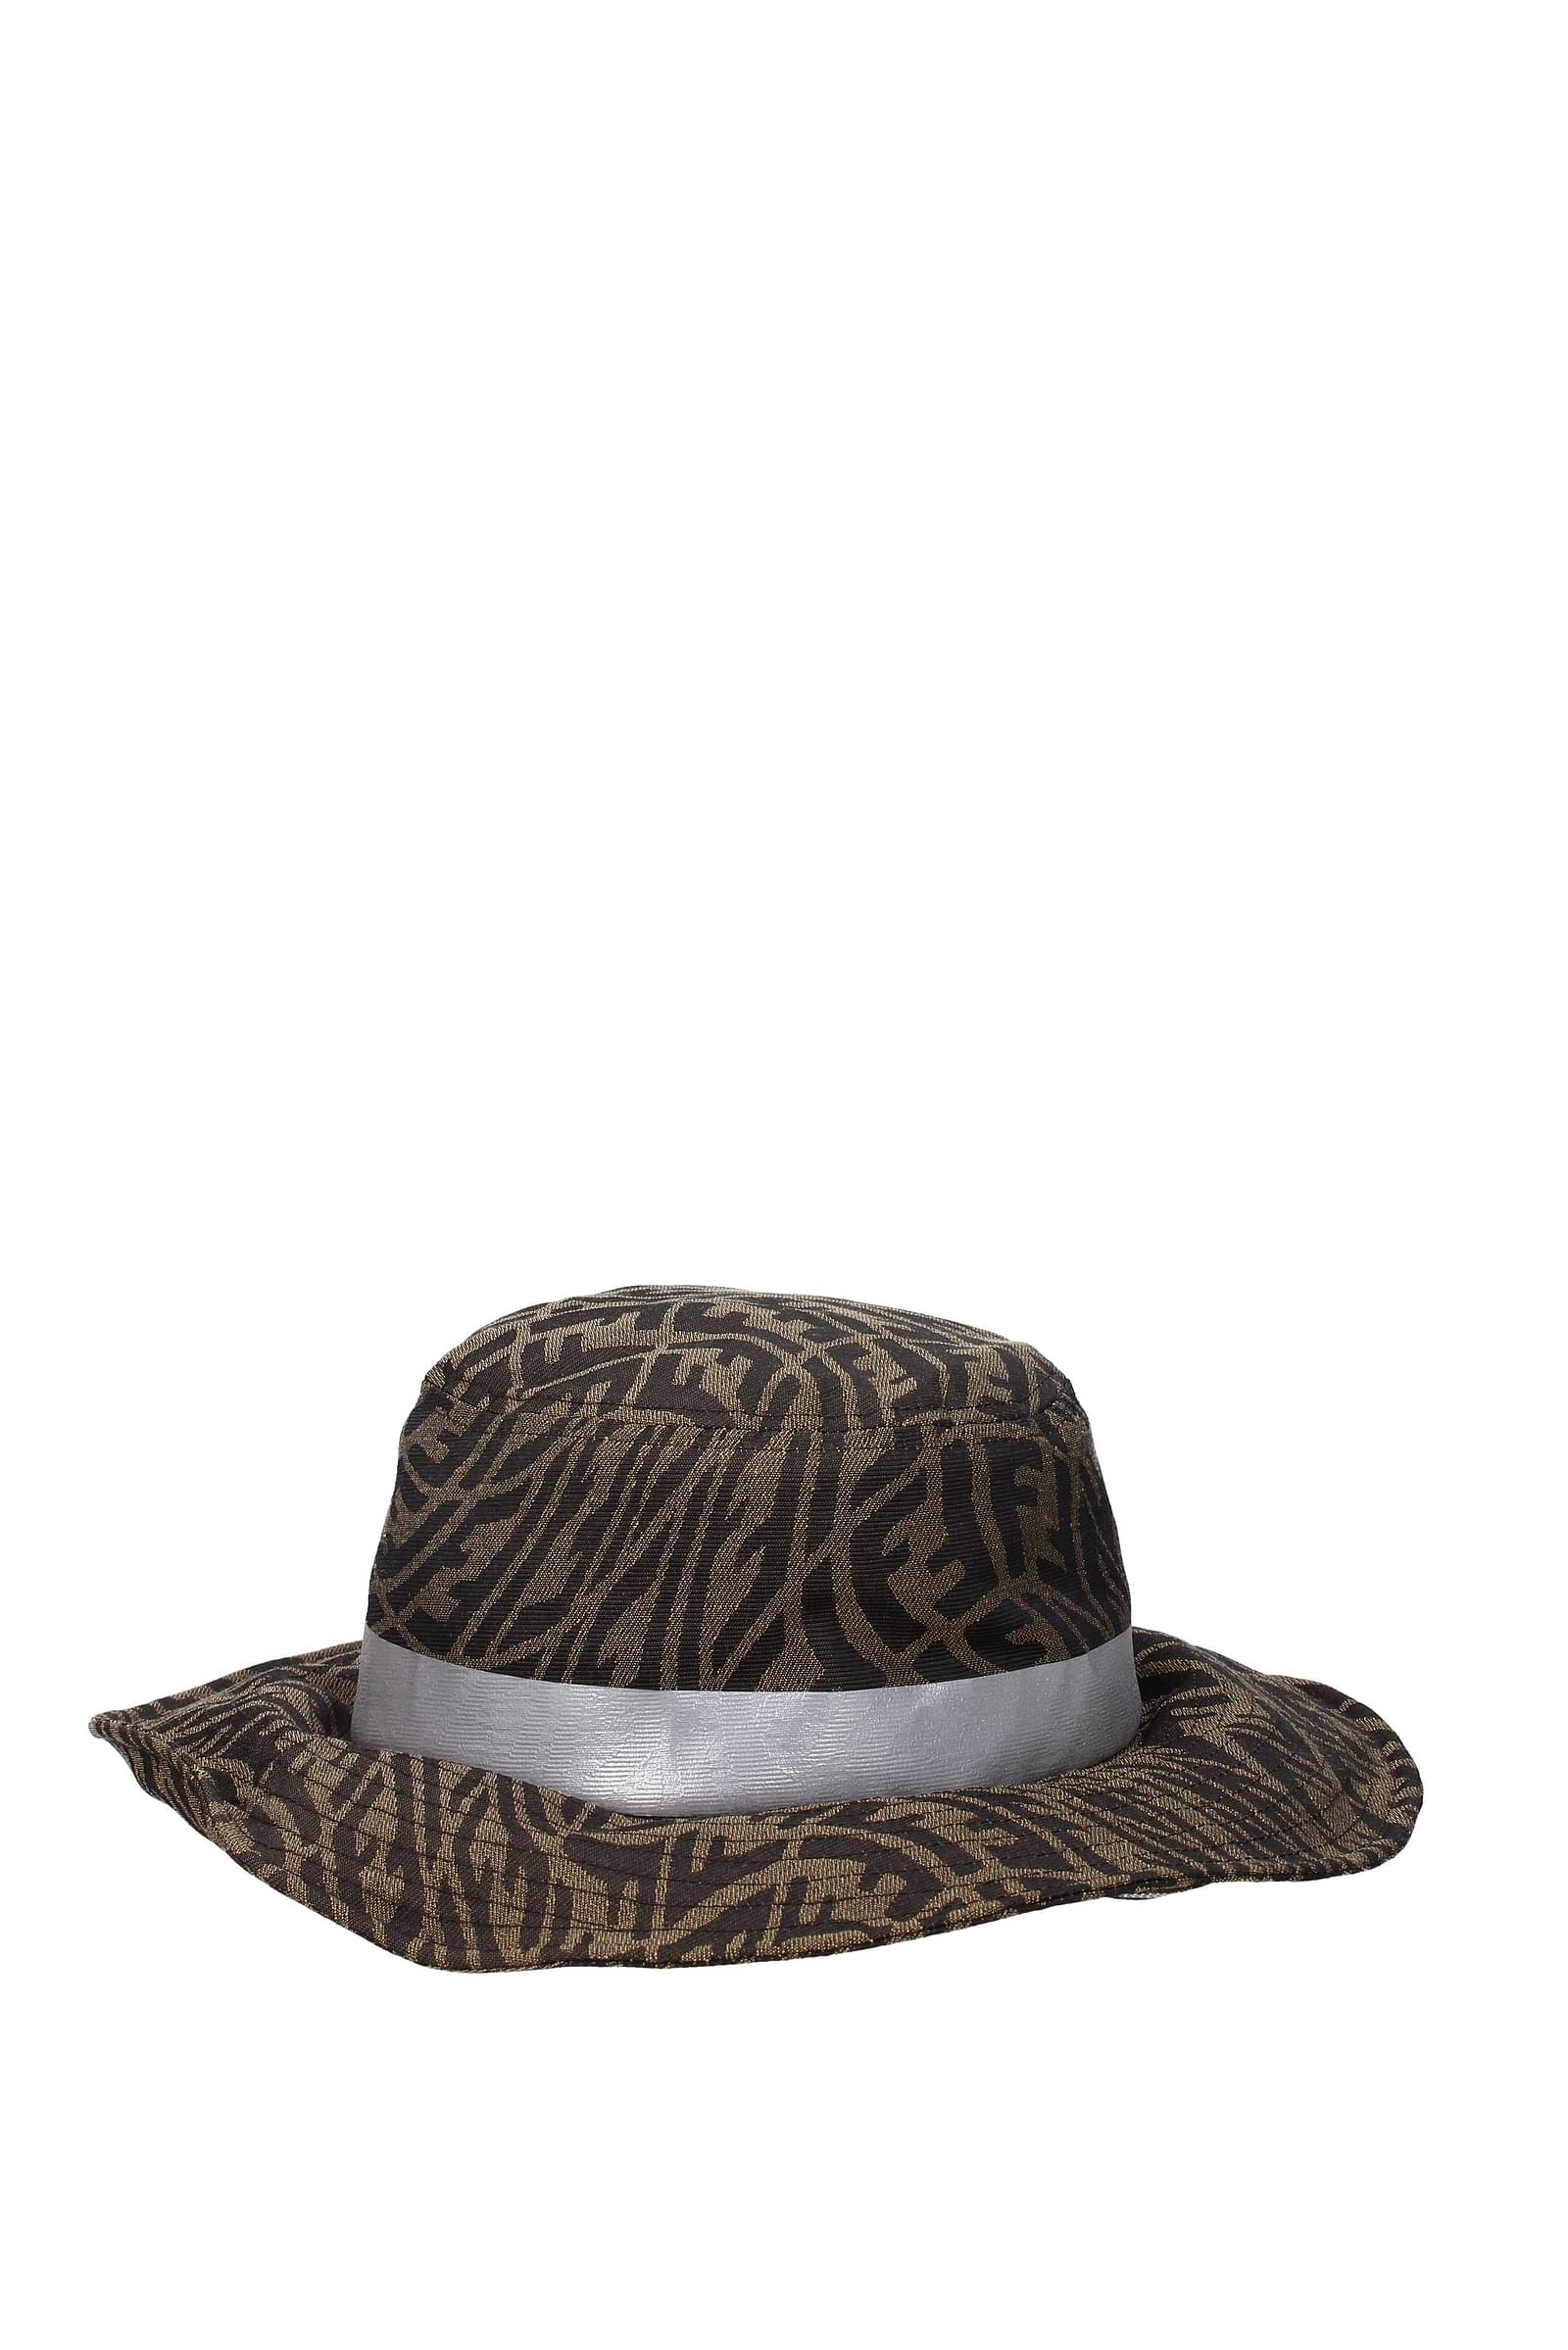 Fendi Hats Women FXQ808F15B6AFYW Fabric Brown 446,25€